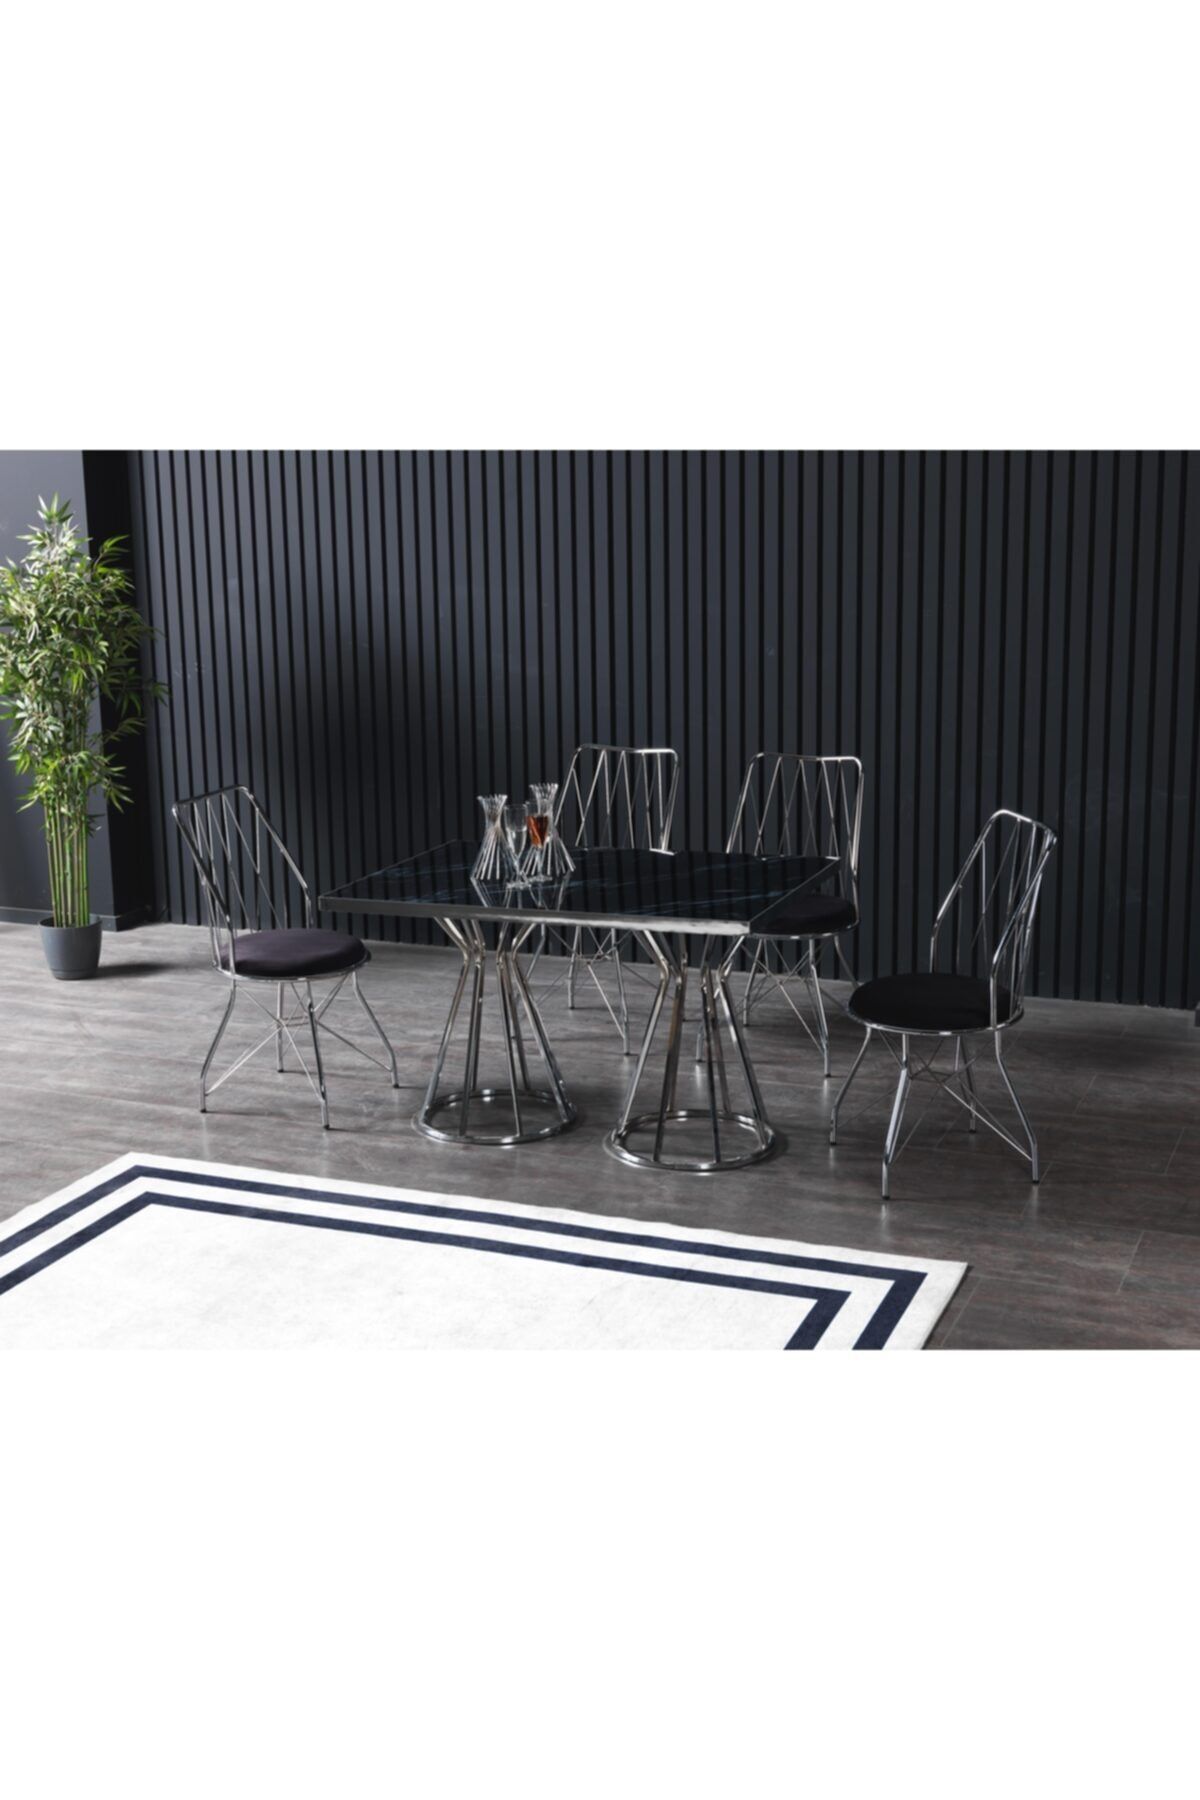 Ressa Home Meyra 4 Kişilik Siyah Mermerli Mutfak Masası Takımı-gümüş Baklava 80x120 Cm